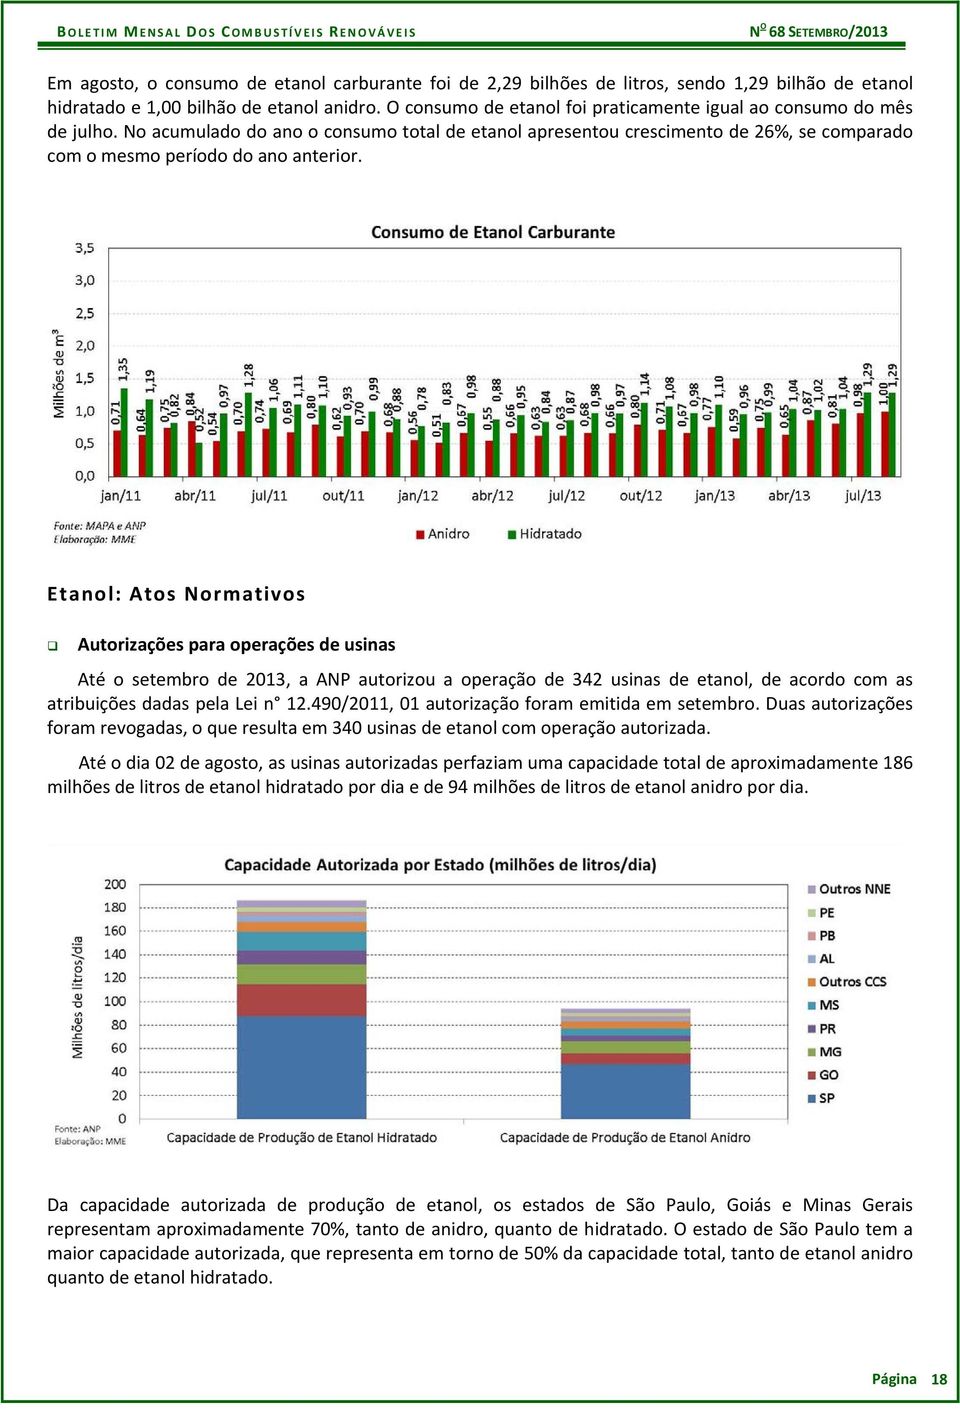 Etanol: Atos Normativos Autorizações para operações de usinas Até o setembro de 2013, a ANP autorizou a operação de 342 usinas de etanol, de acordo com as atribuições dadas pela Lei n 12.